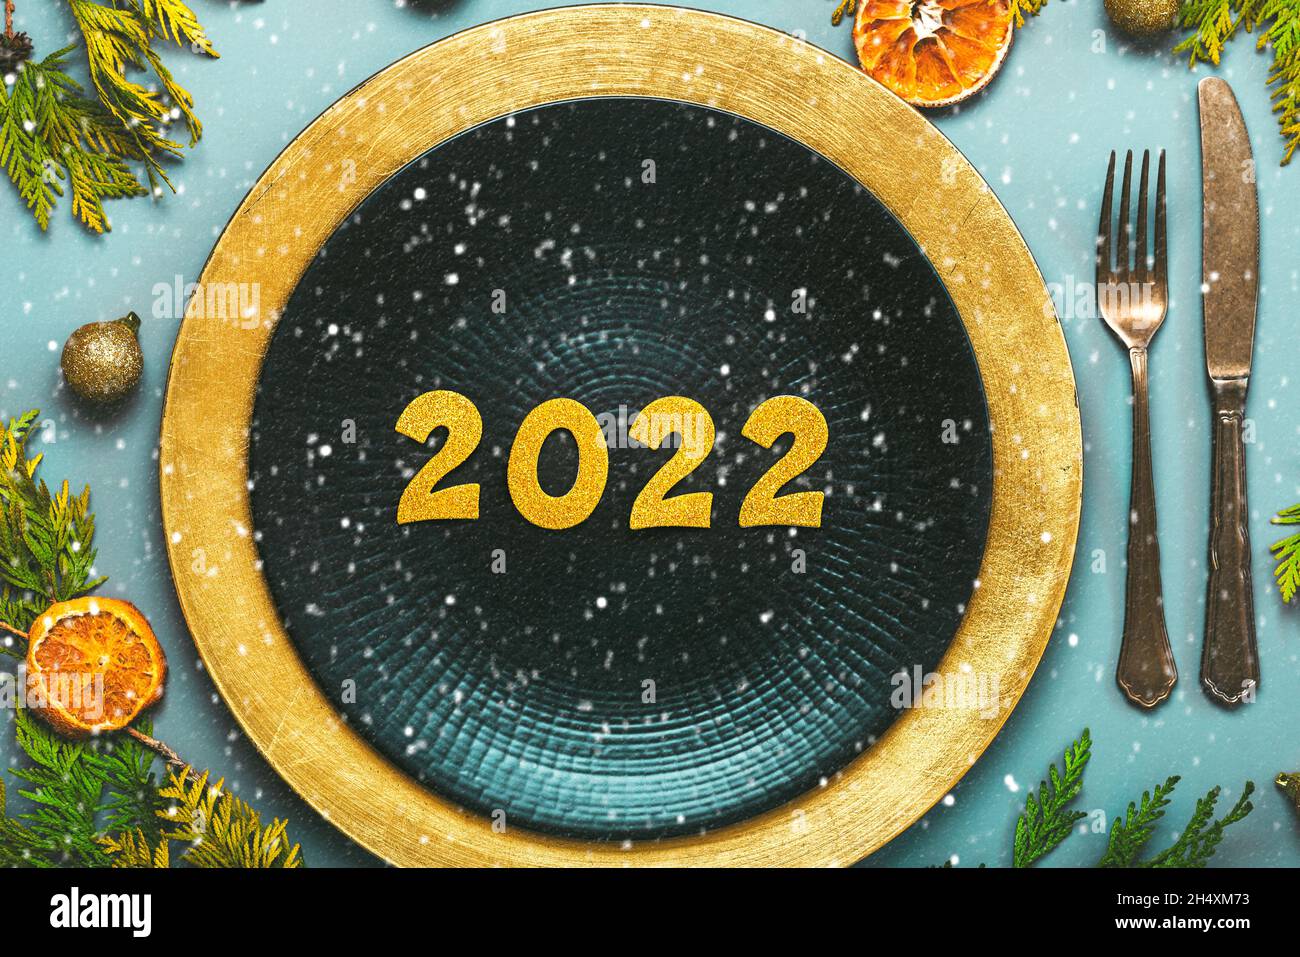 Frohes neues Jahr 2022. Draufsicht auf goldene Zahlen 2022 auf dem Teller zum Weihnachtsessen und Schneeflocken auf blauem Hintergrund. Silvesterfeier konz Stockfoto